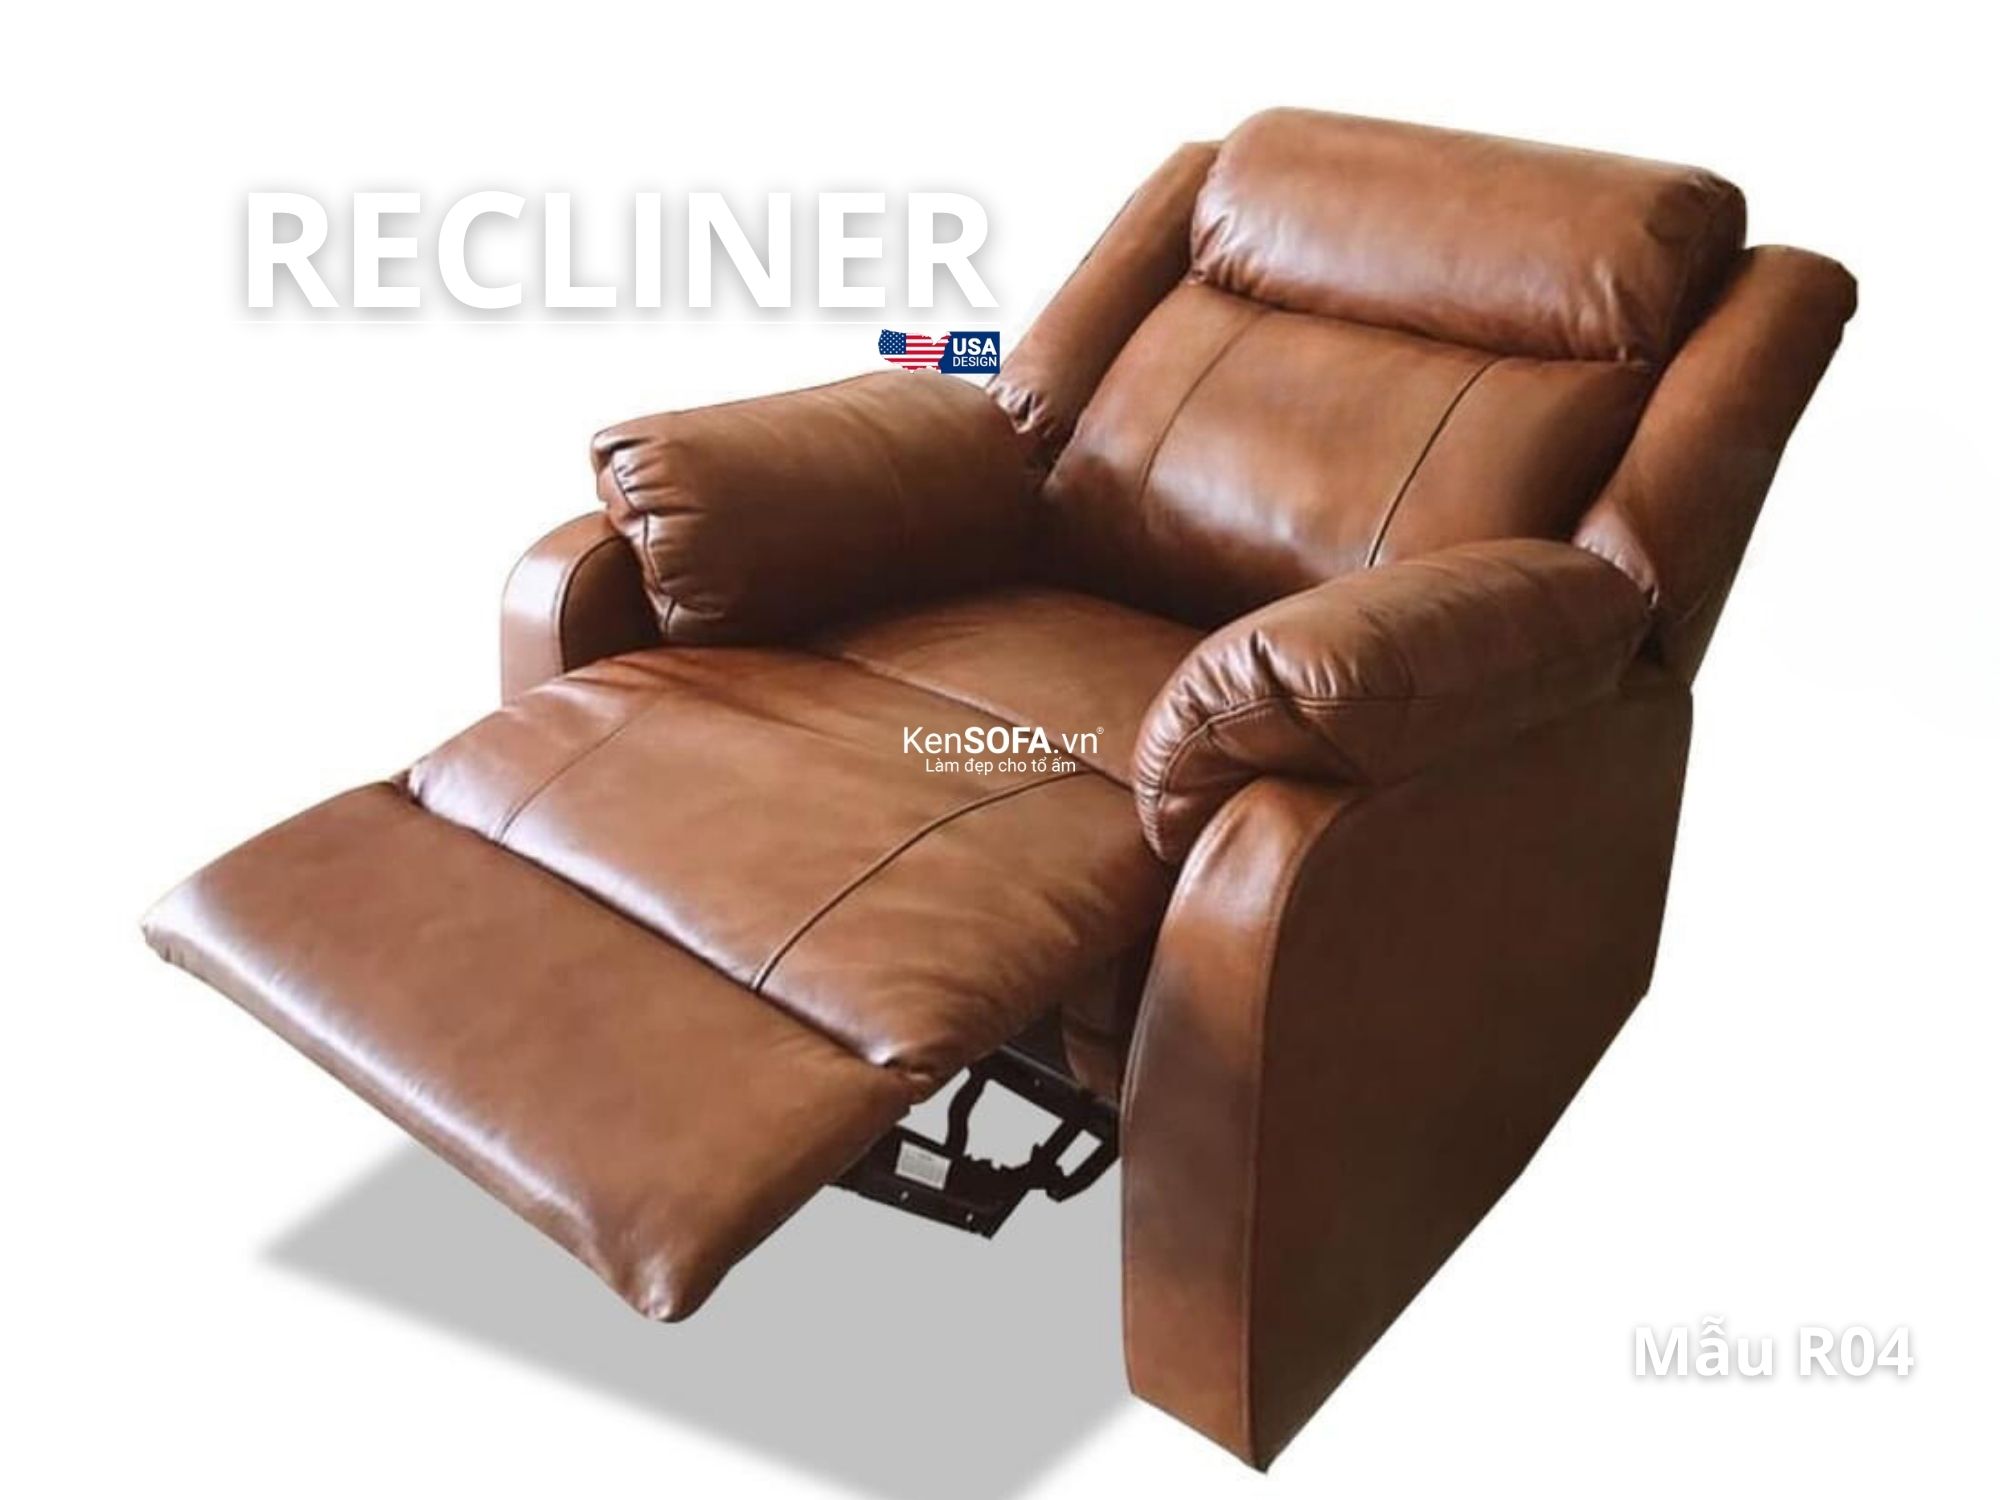 Sofa thư giãn recliner 1 chỗ ngồi: Sự lựa chọn tuyệt vời cho sự thư giãn trong không gian sống